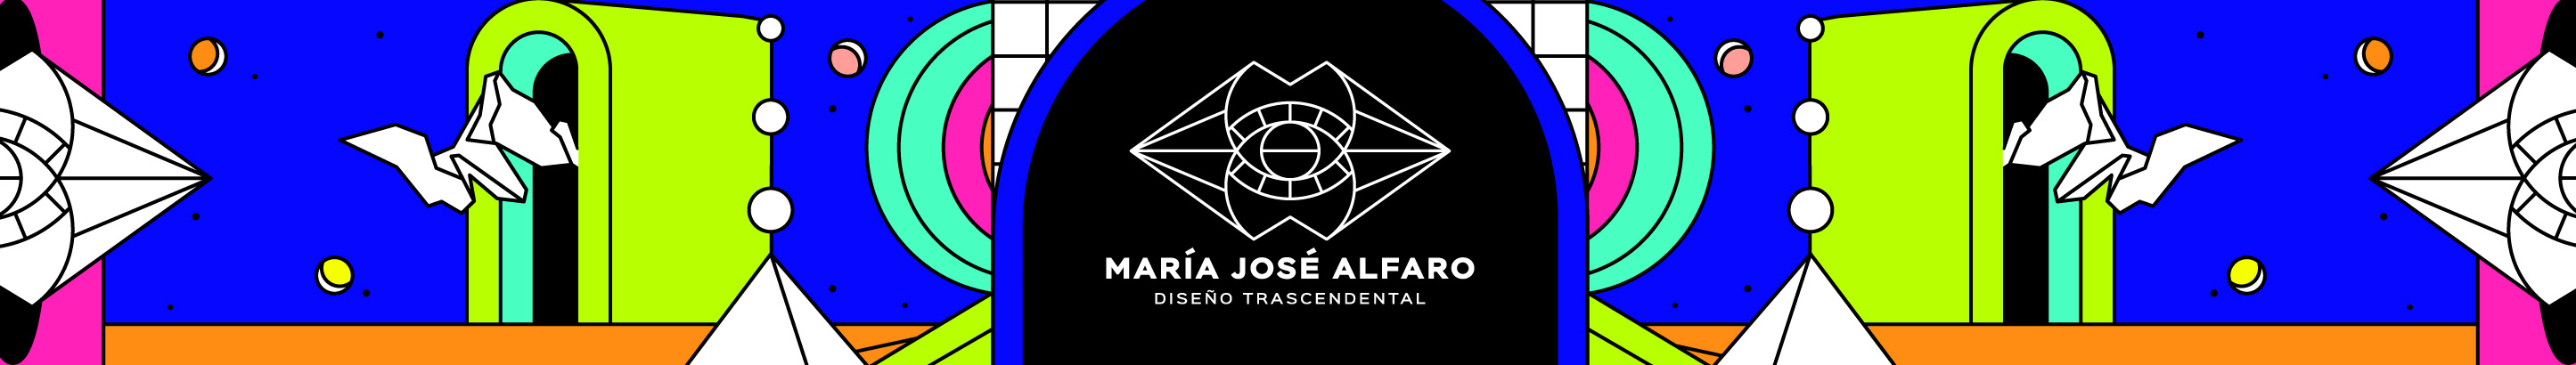 Baner profilu użytkownika María José Alfaro